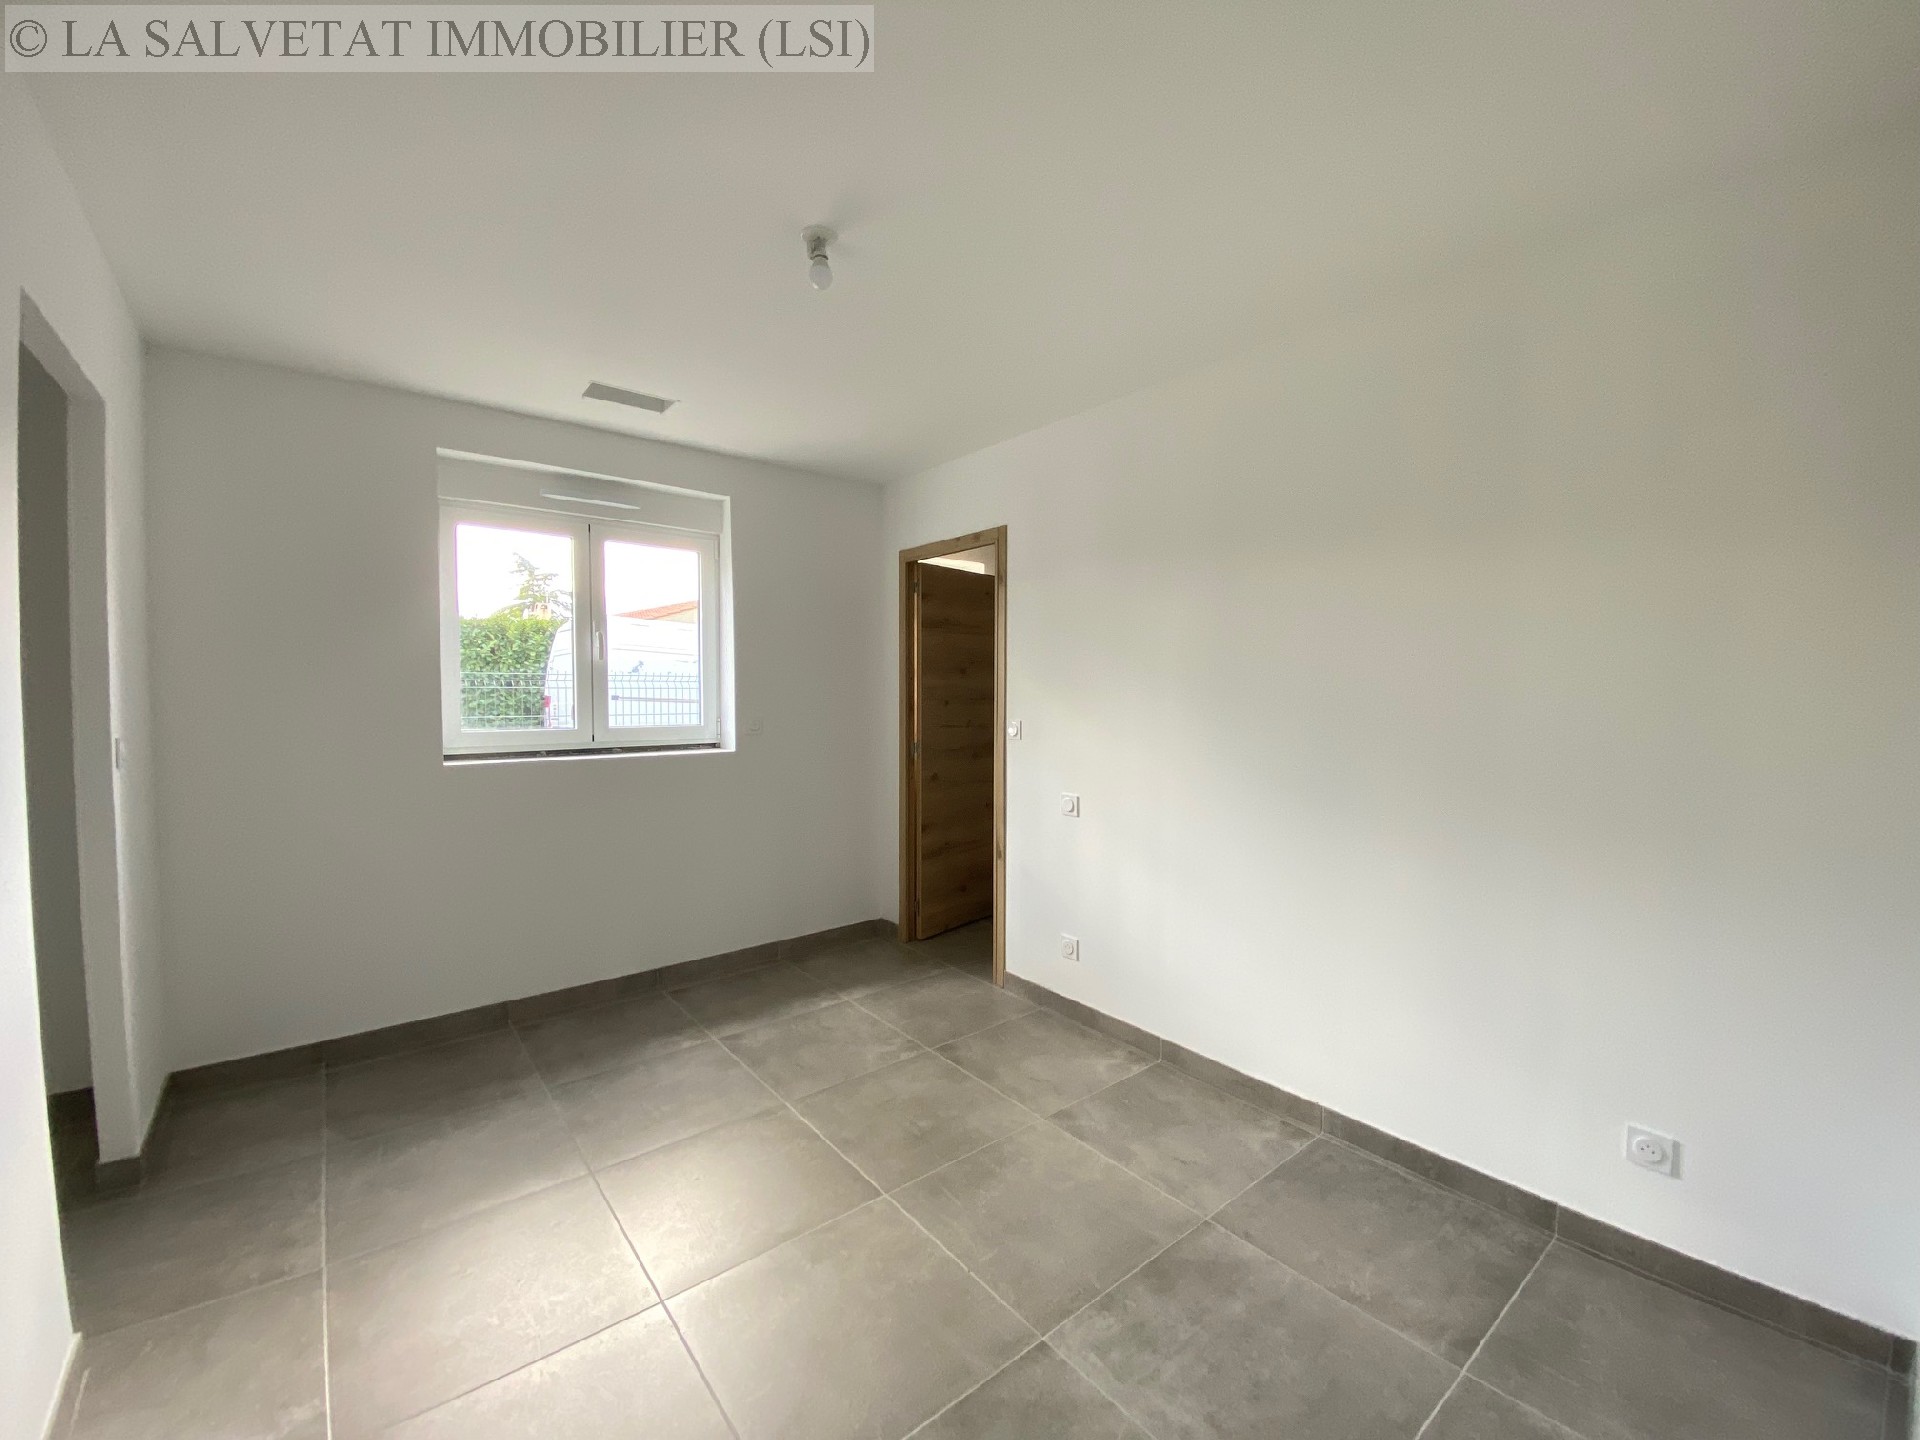 Vente maison-villa - ST LYS<br>97 m², 4 pièces